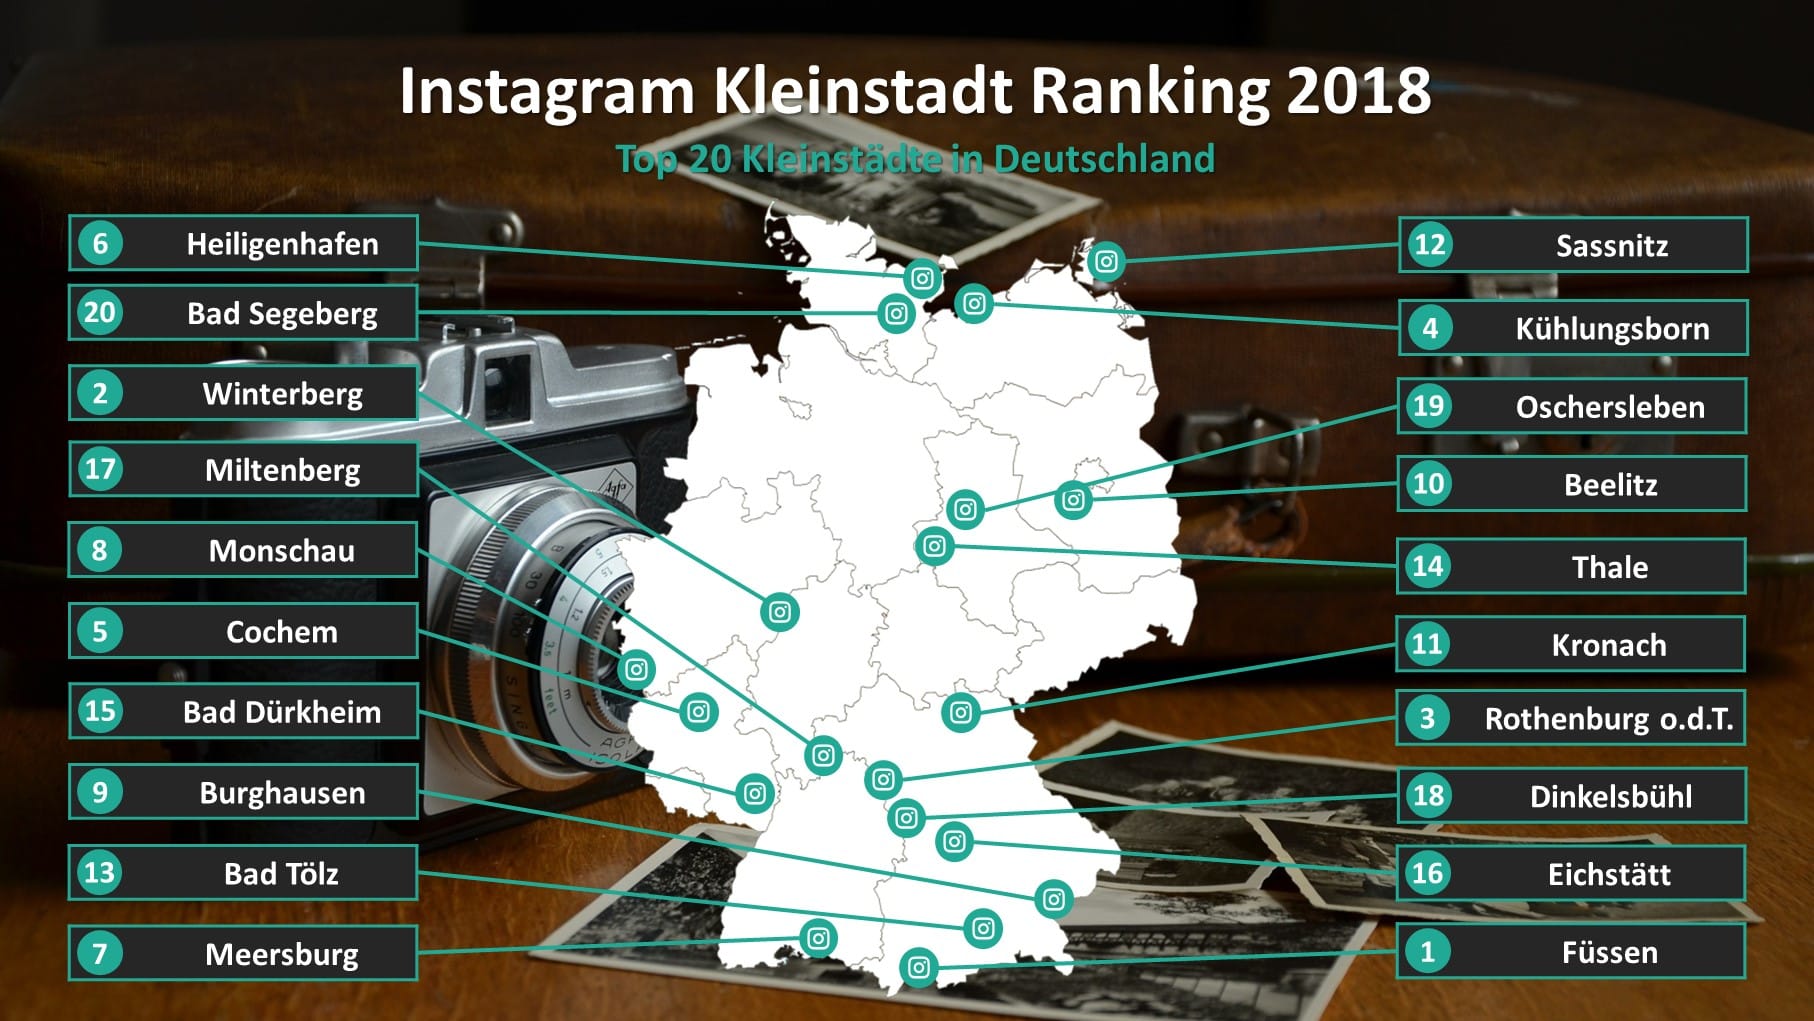 Ranking 2018: Das sind die fotogensten Kleinstädte in Deutschland.